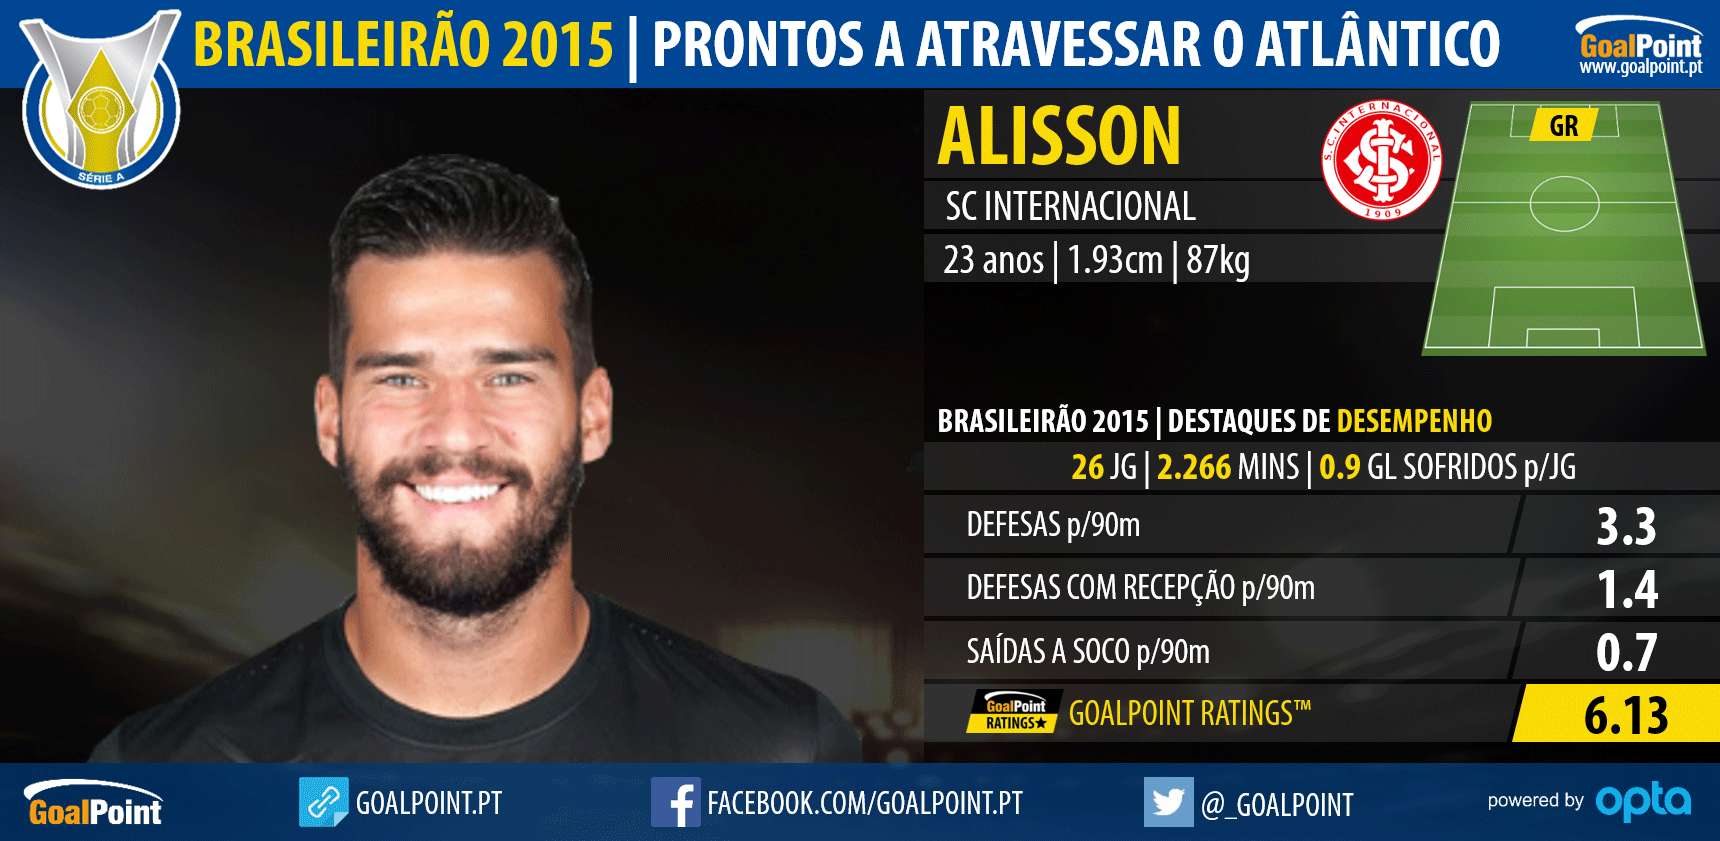 Brasileirão 2015: 10 nomes prontos a atravessar o Atlântico - Alisson